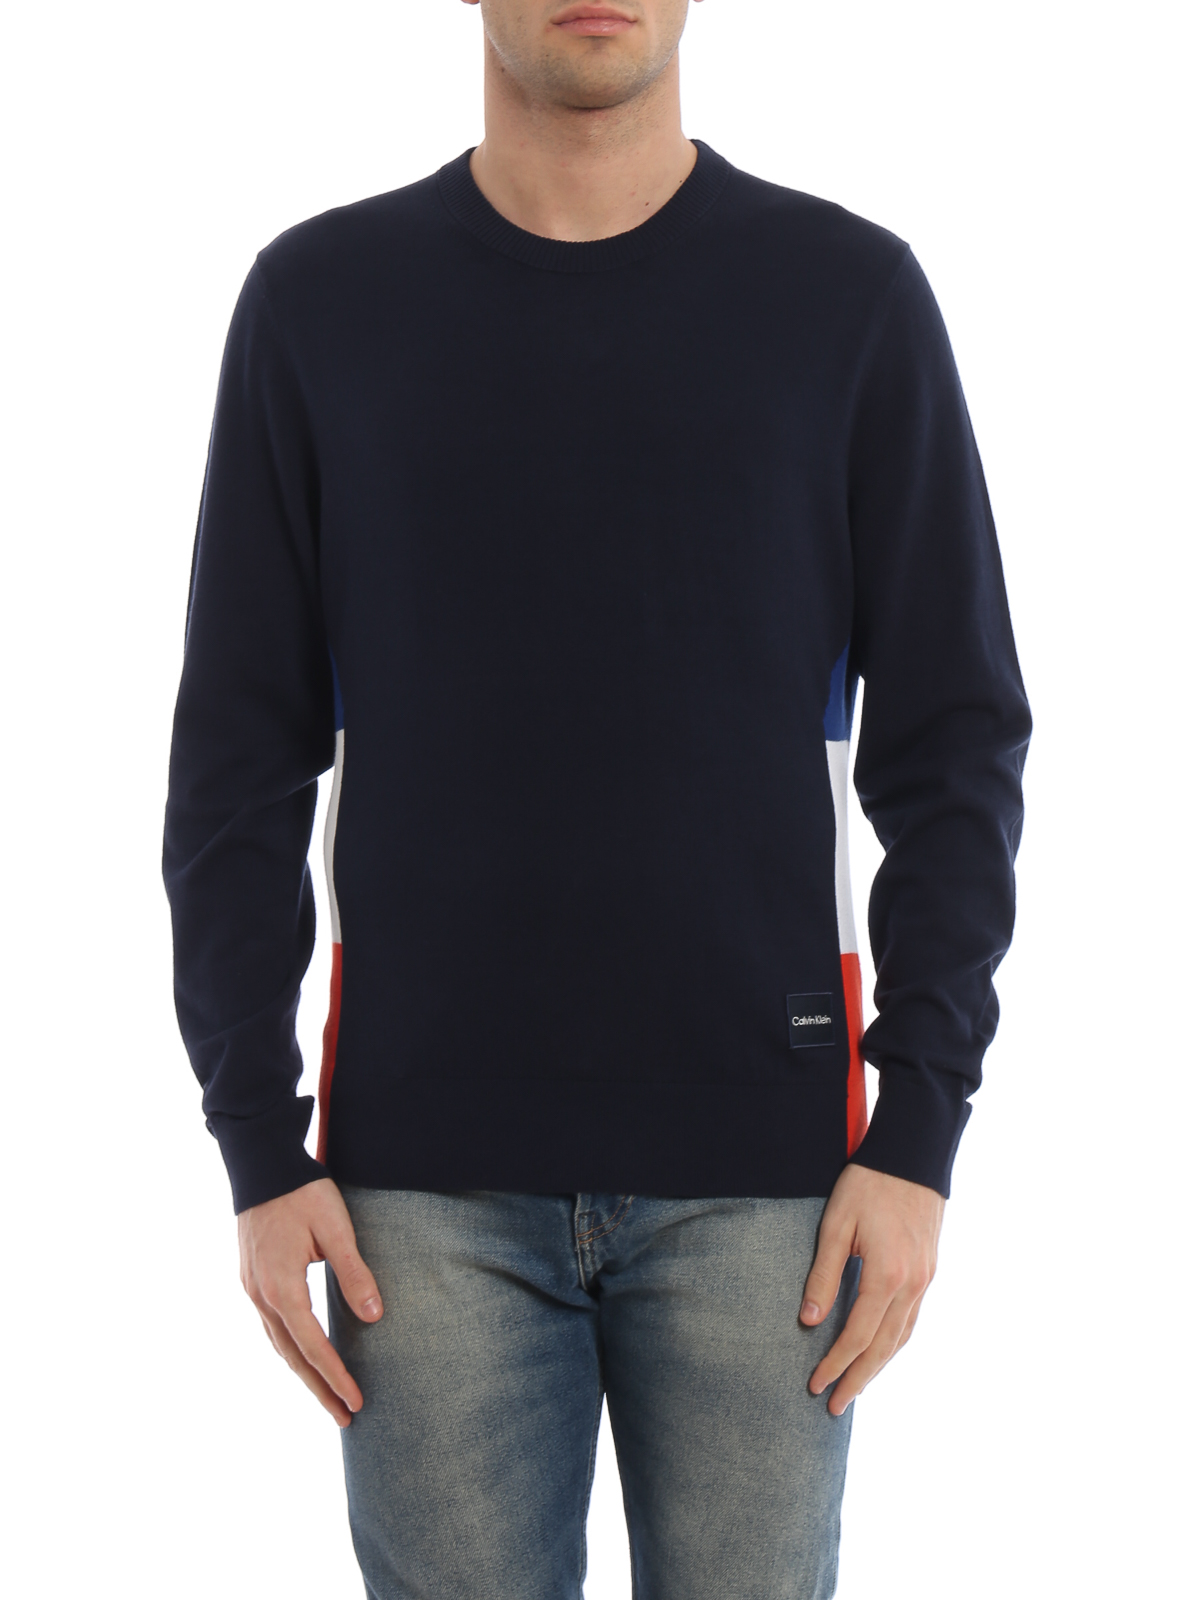 Gematigd Effectiviteit Millimeter Crew necks Calvin Klein - Cotton and wool blend crew neck sweater -  K10K102998484